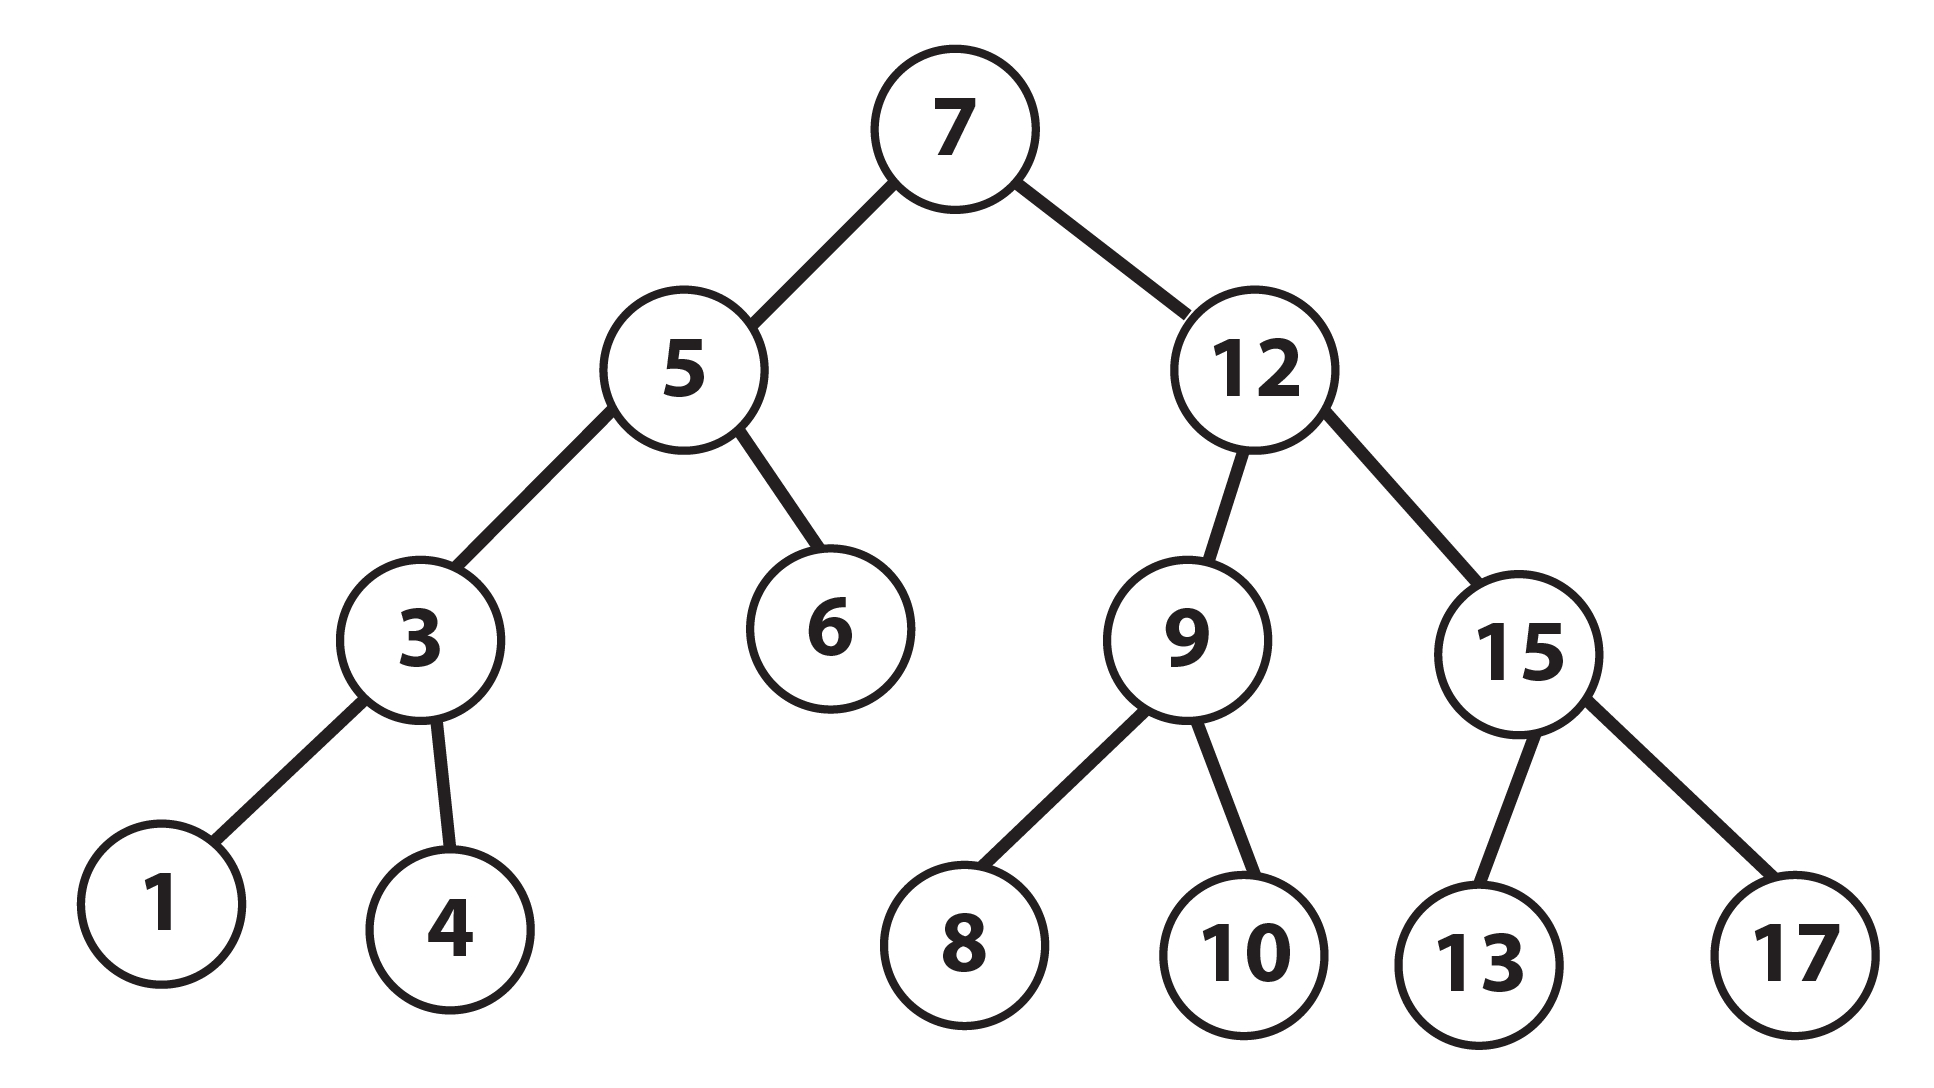 binarysearchtree